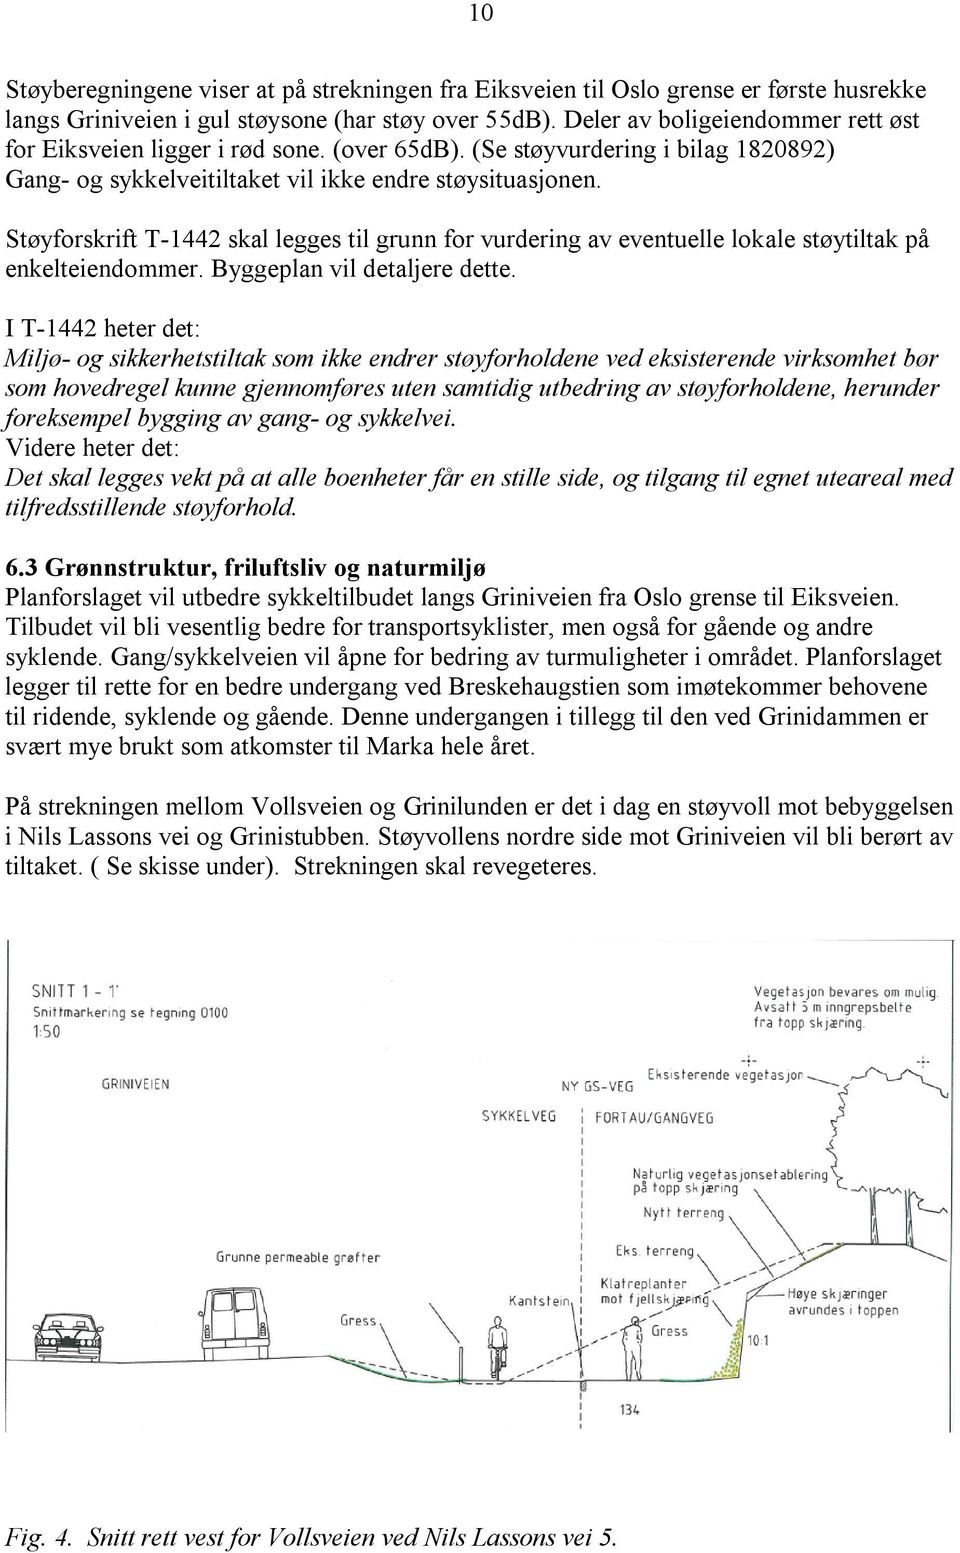 Støyforskrift T-1442 skal legges til grunn for vurdering av eventuelle lokale støytiltak på enkelteiendommer. Byggeplan vil detaljere dette.